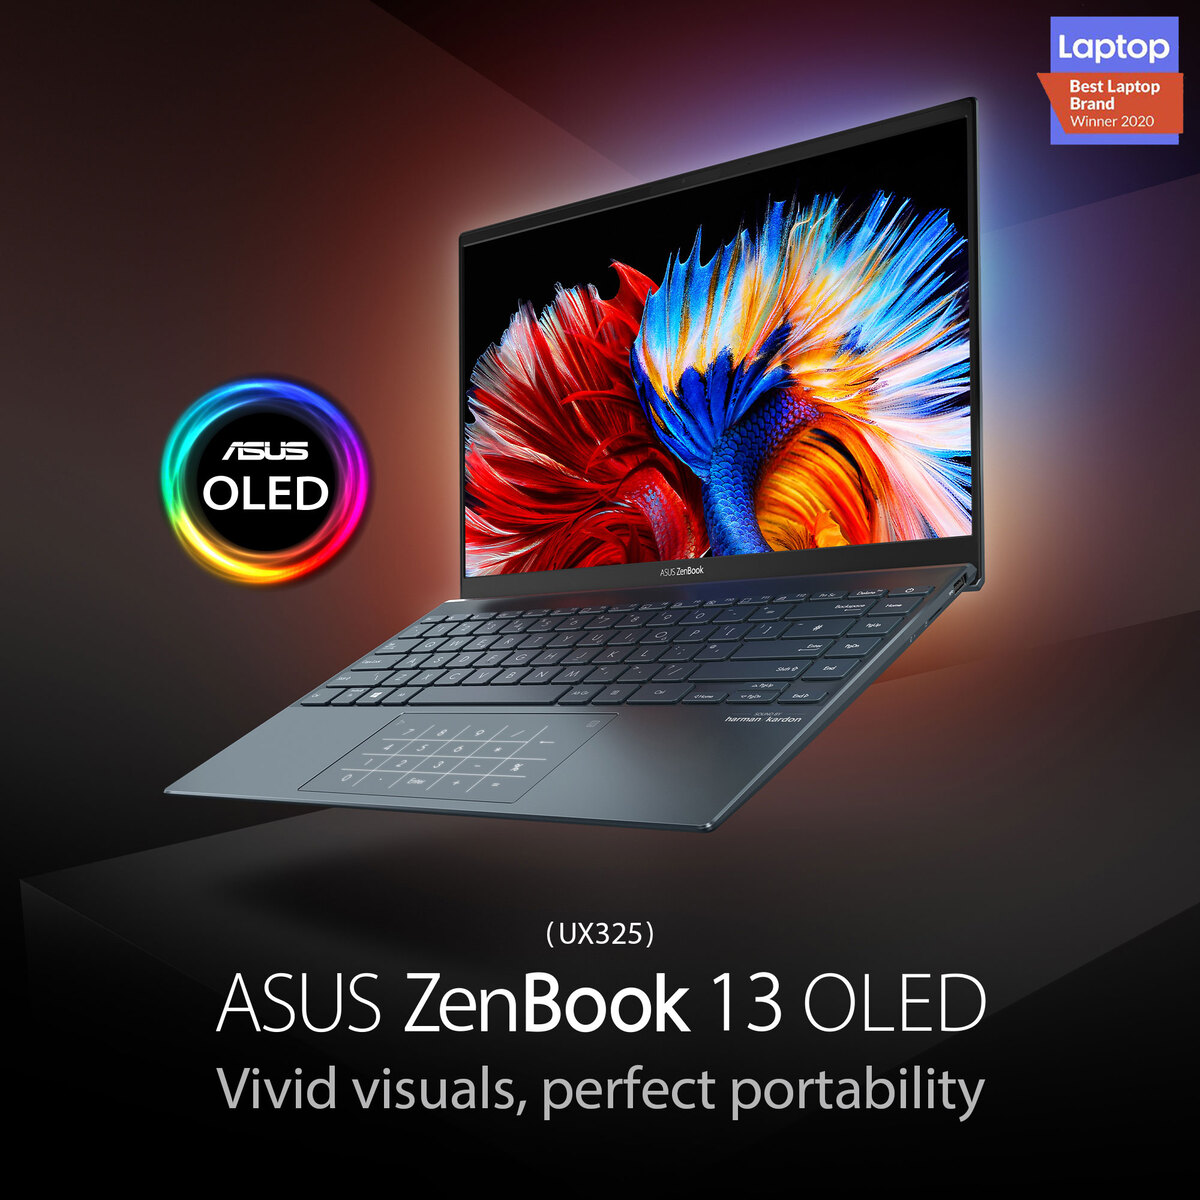 Asus Zenbook 13 OLED UX325EA-OLED001T,Intel Core i7-1165G7 Processor 2.8 GHz,16GB RAM,1TB SSD,13.3" OLED FHD,Windows10,Grey